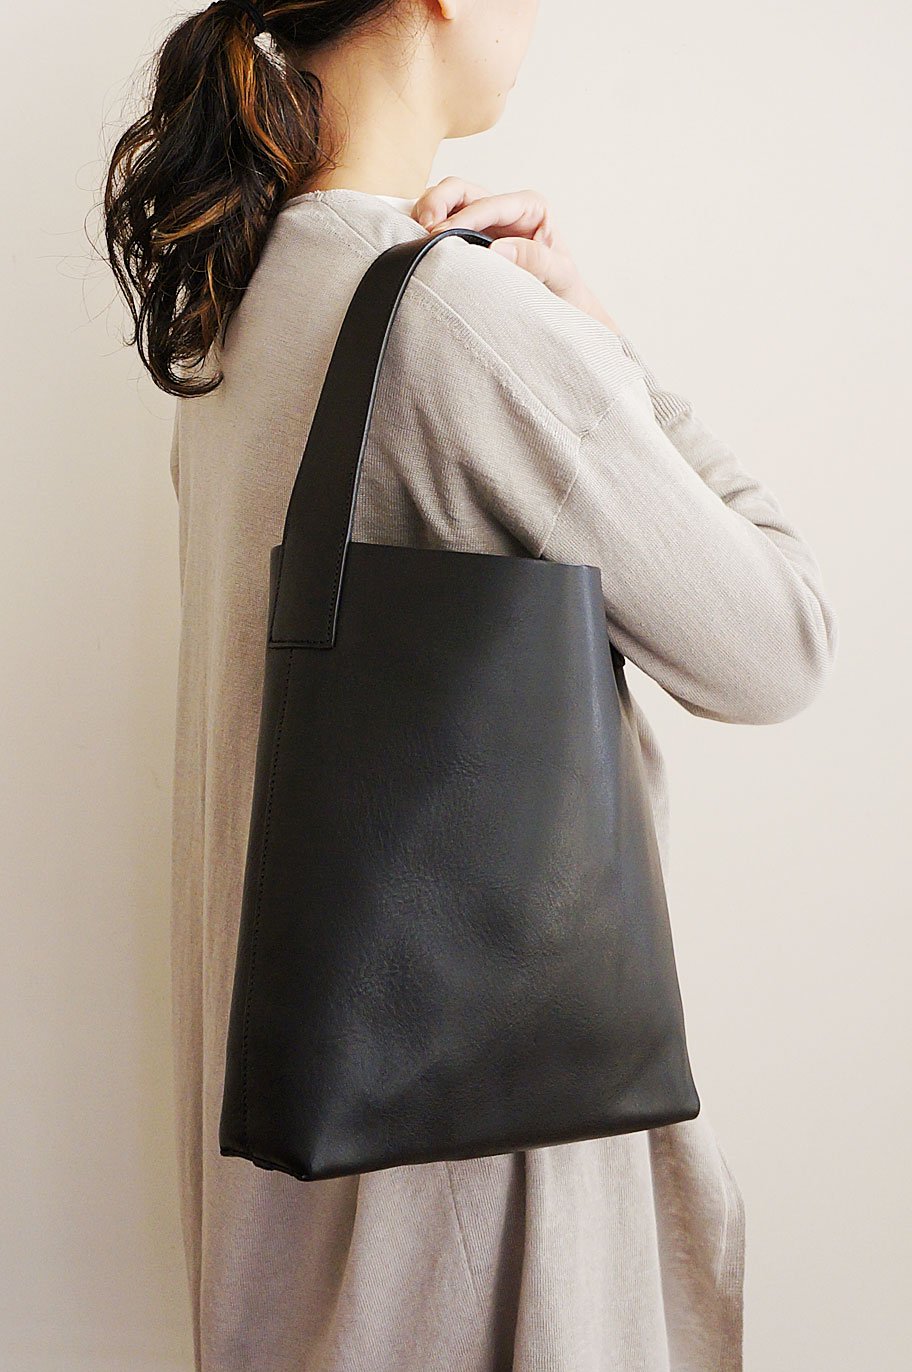 Vin one shoulder bag (S)・(M) - Vin - TONE online shop